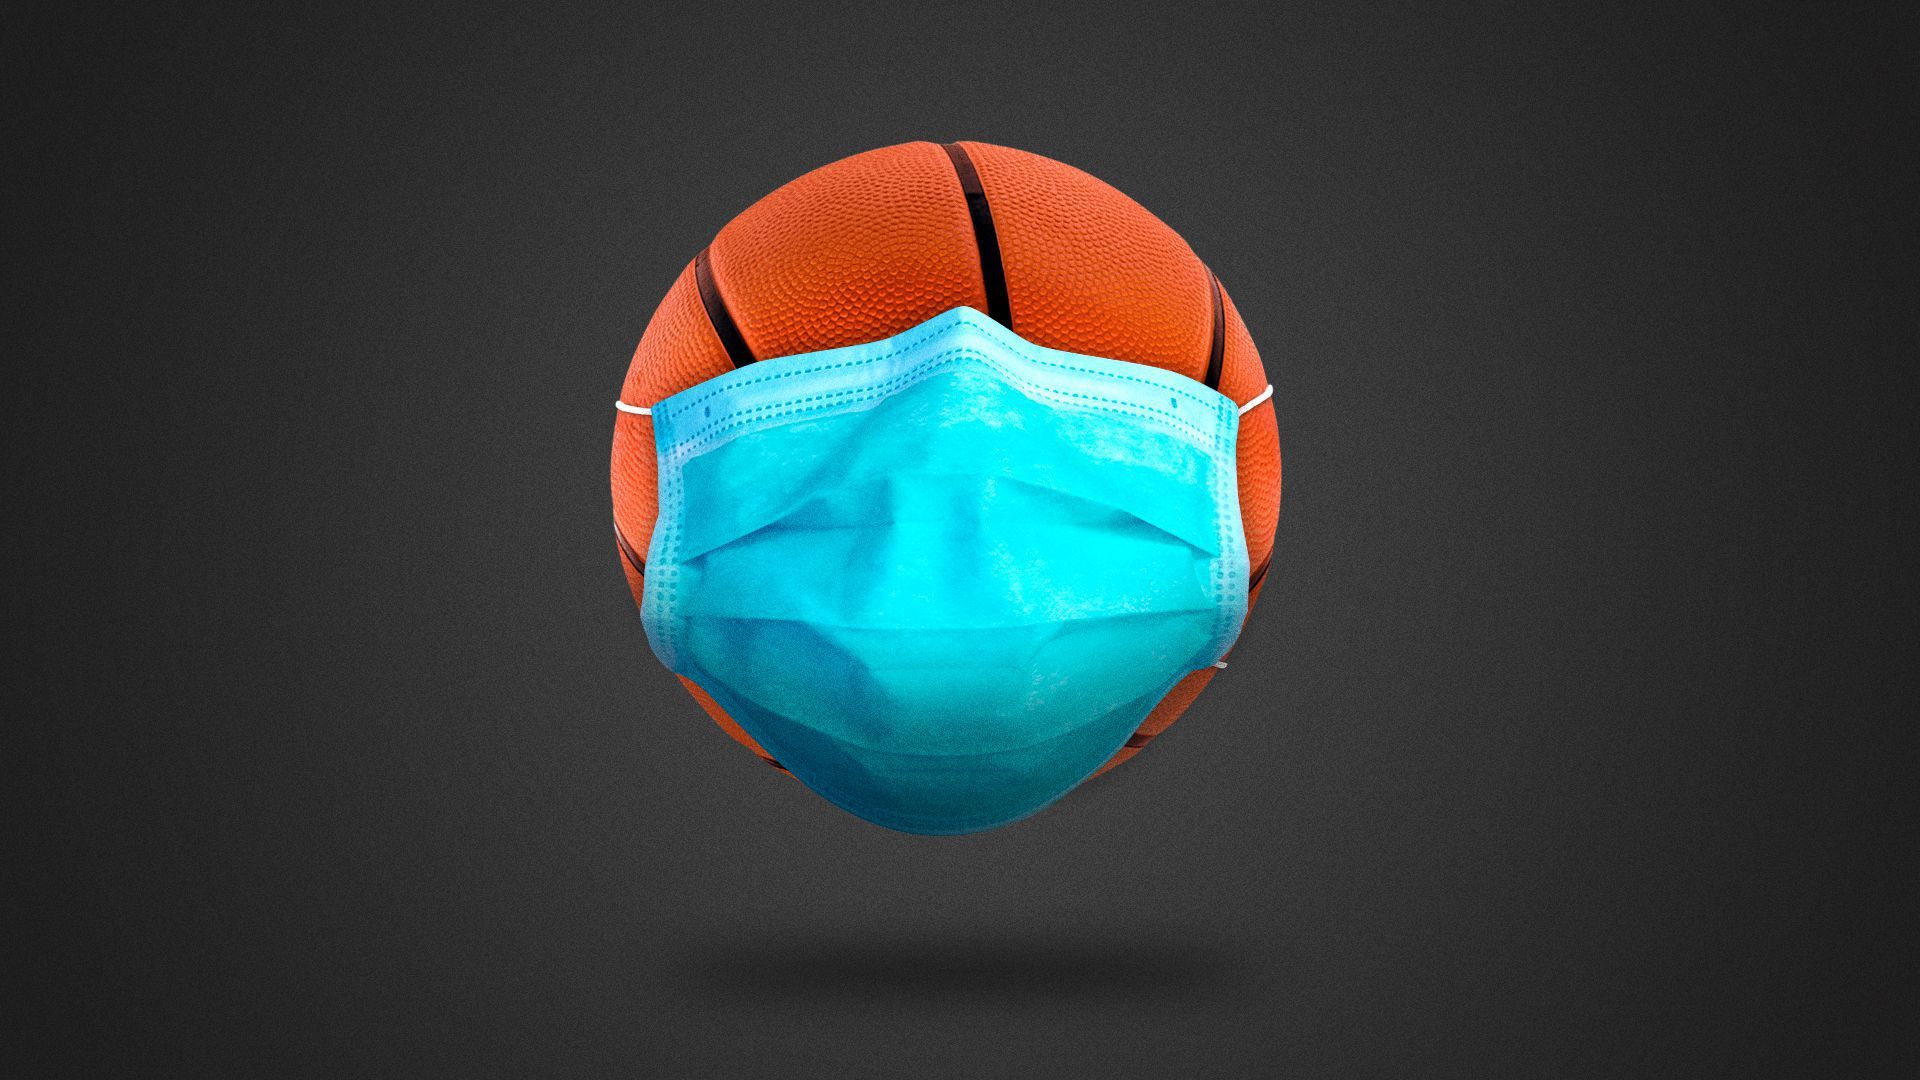 Basketball wearing a mask